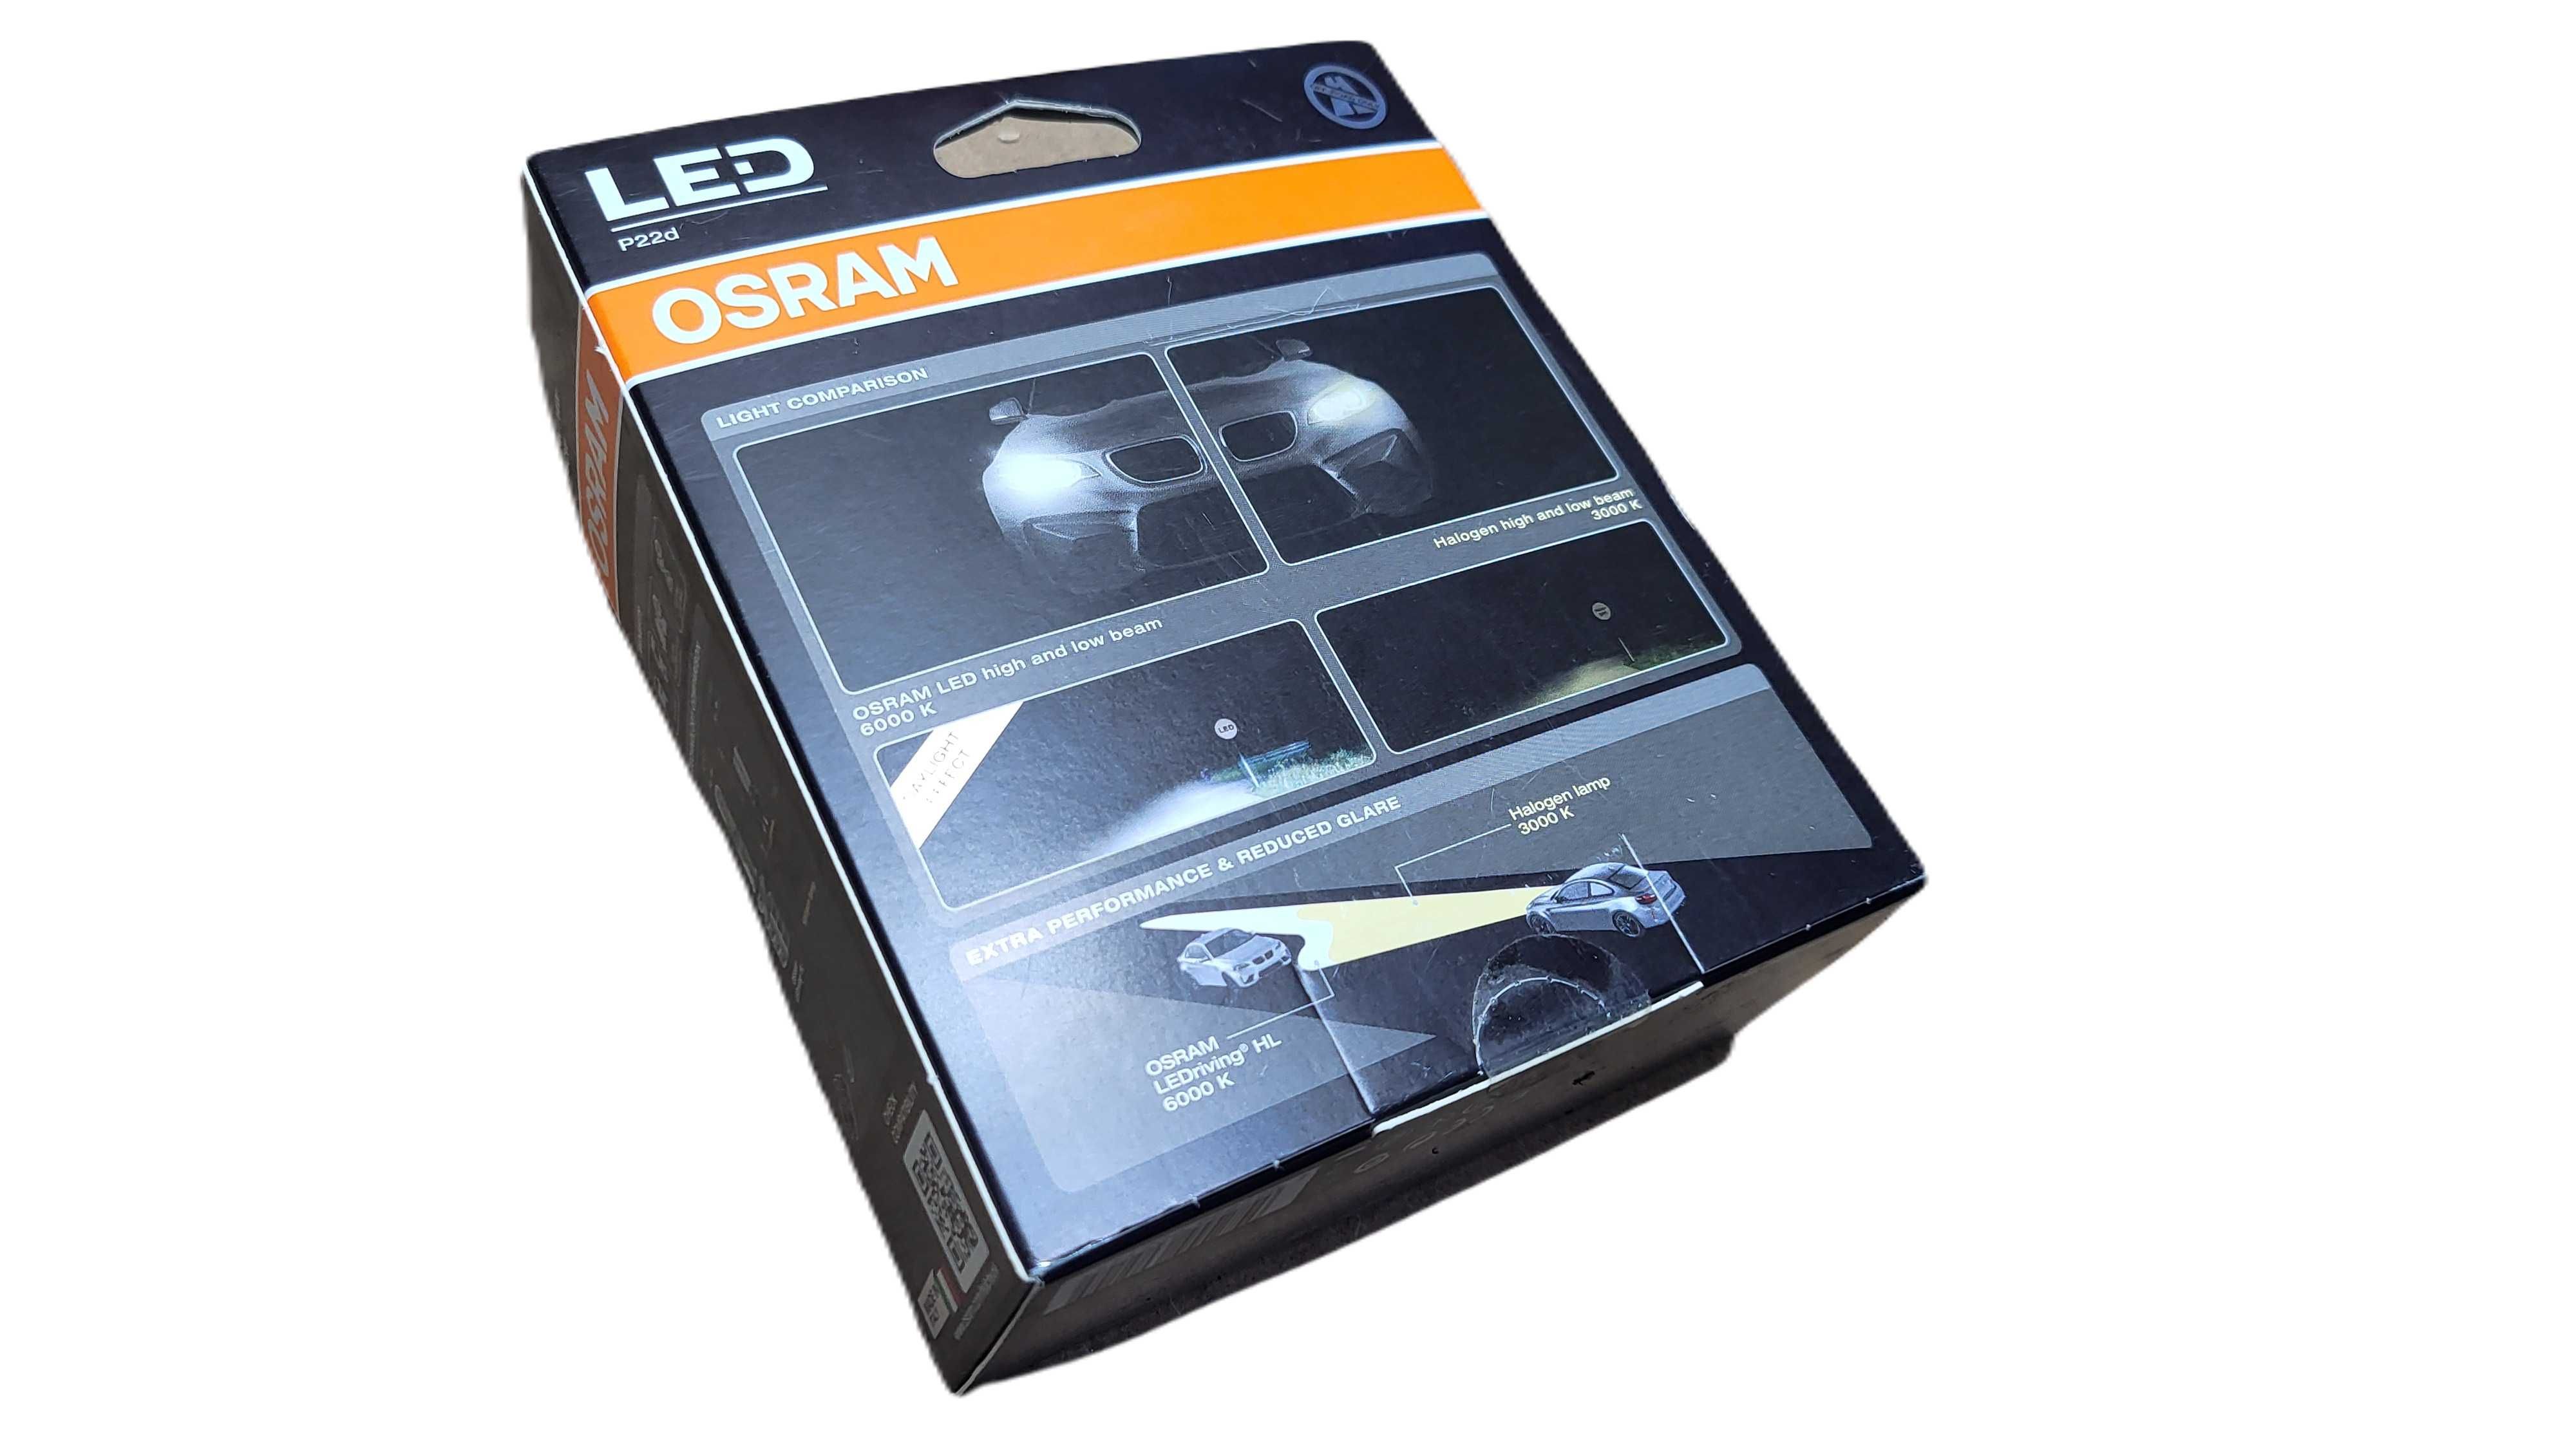 Żarówka żarówki LED Osram LEDriving HL HB4 14W 9736CW 6000K NOWE!